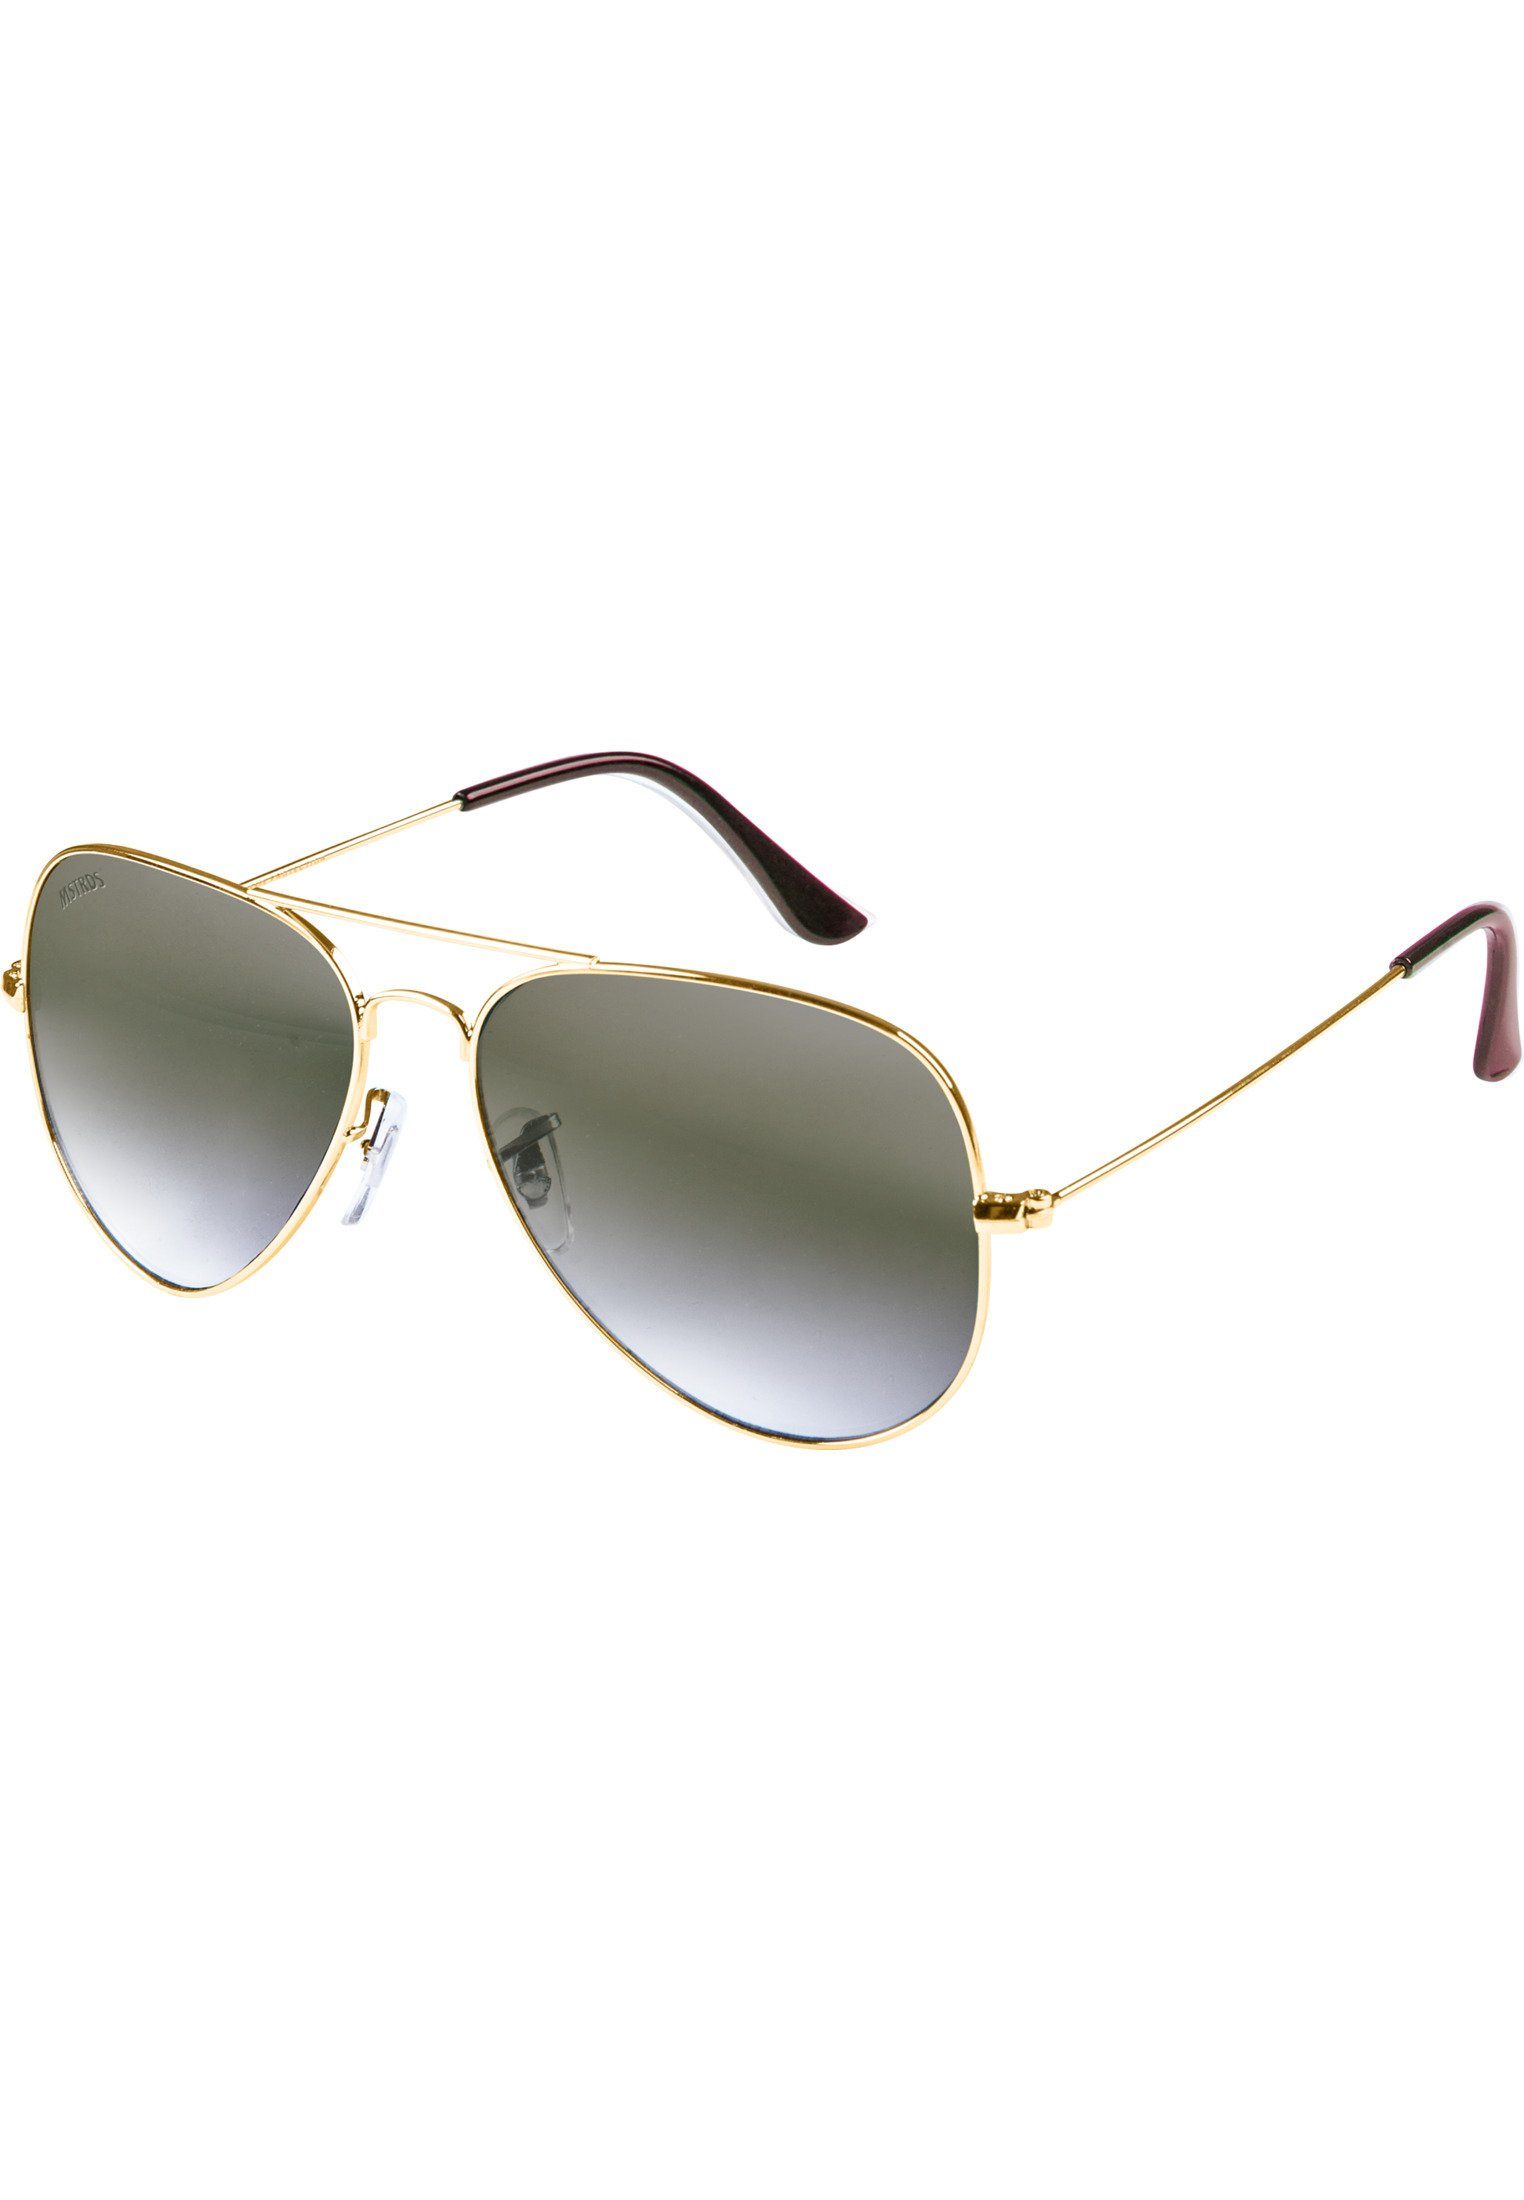 Sport Accessoires Ideal geeignet auch Sunglasses im PureAv Sonnenbrille Youth, MSTRDS für Freien